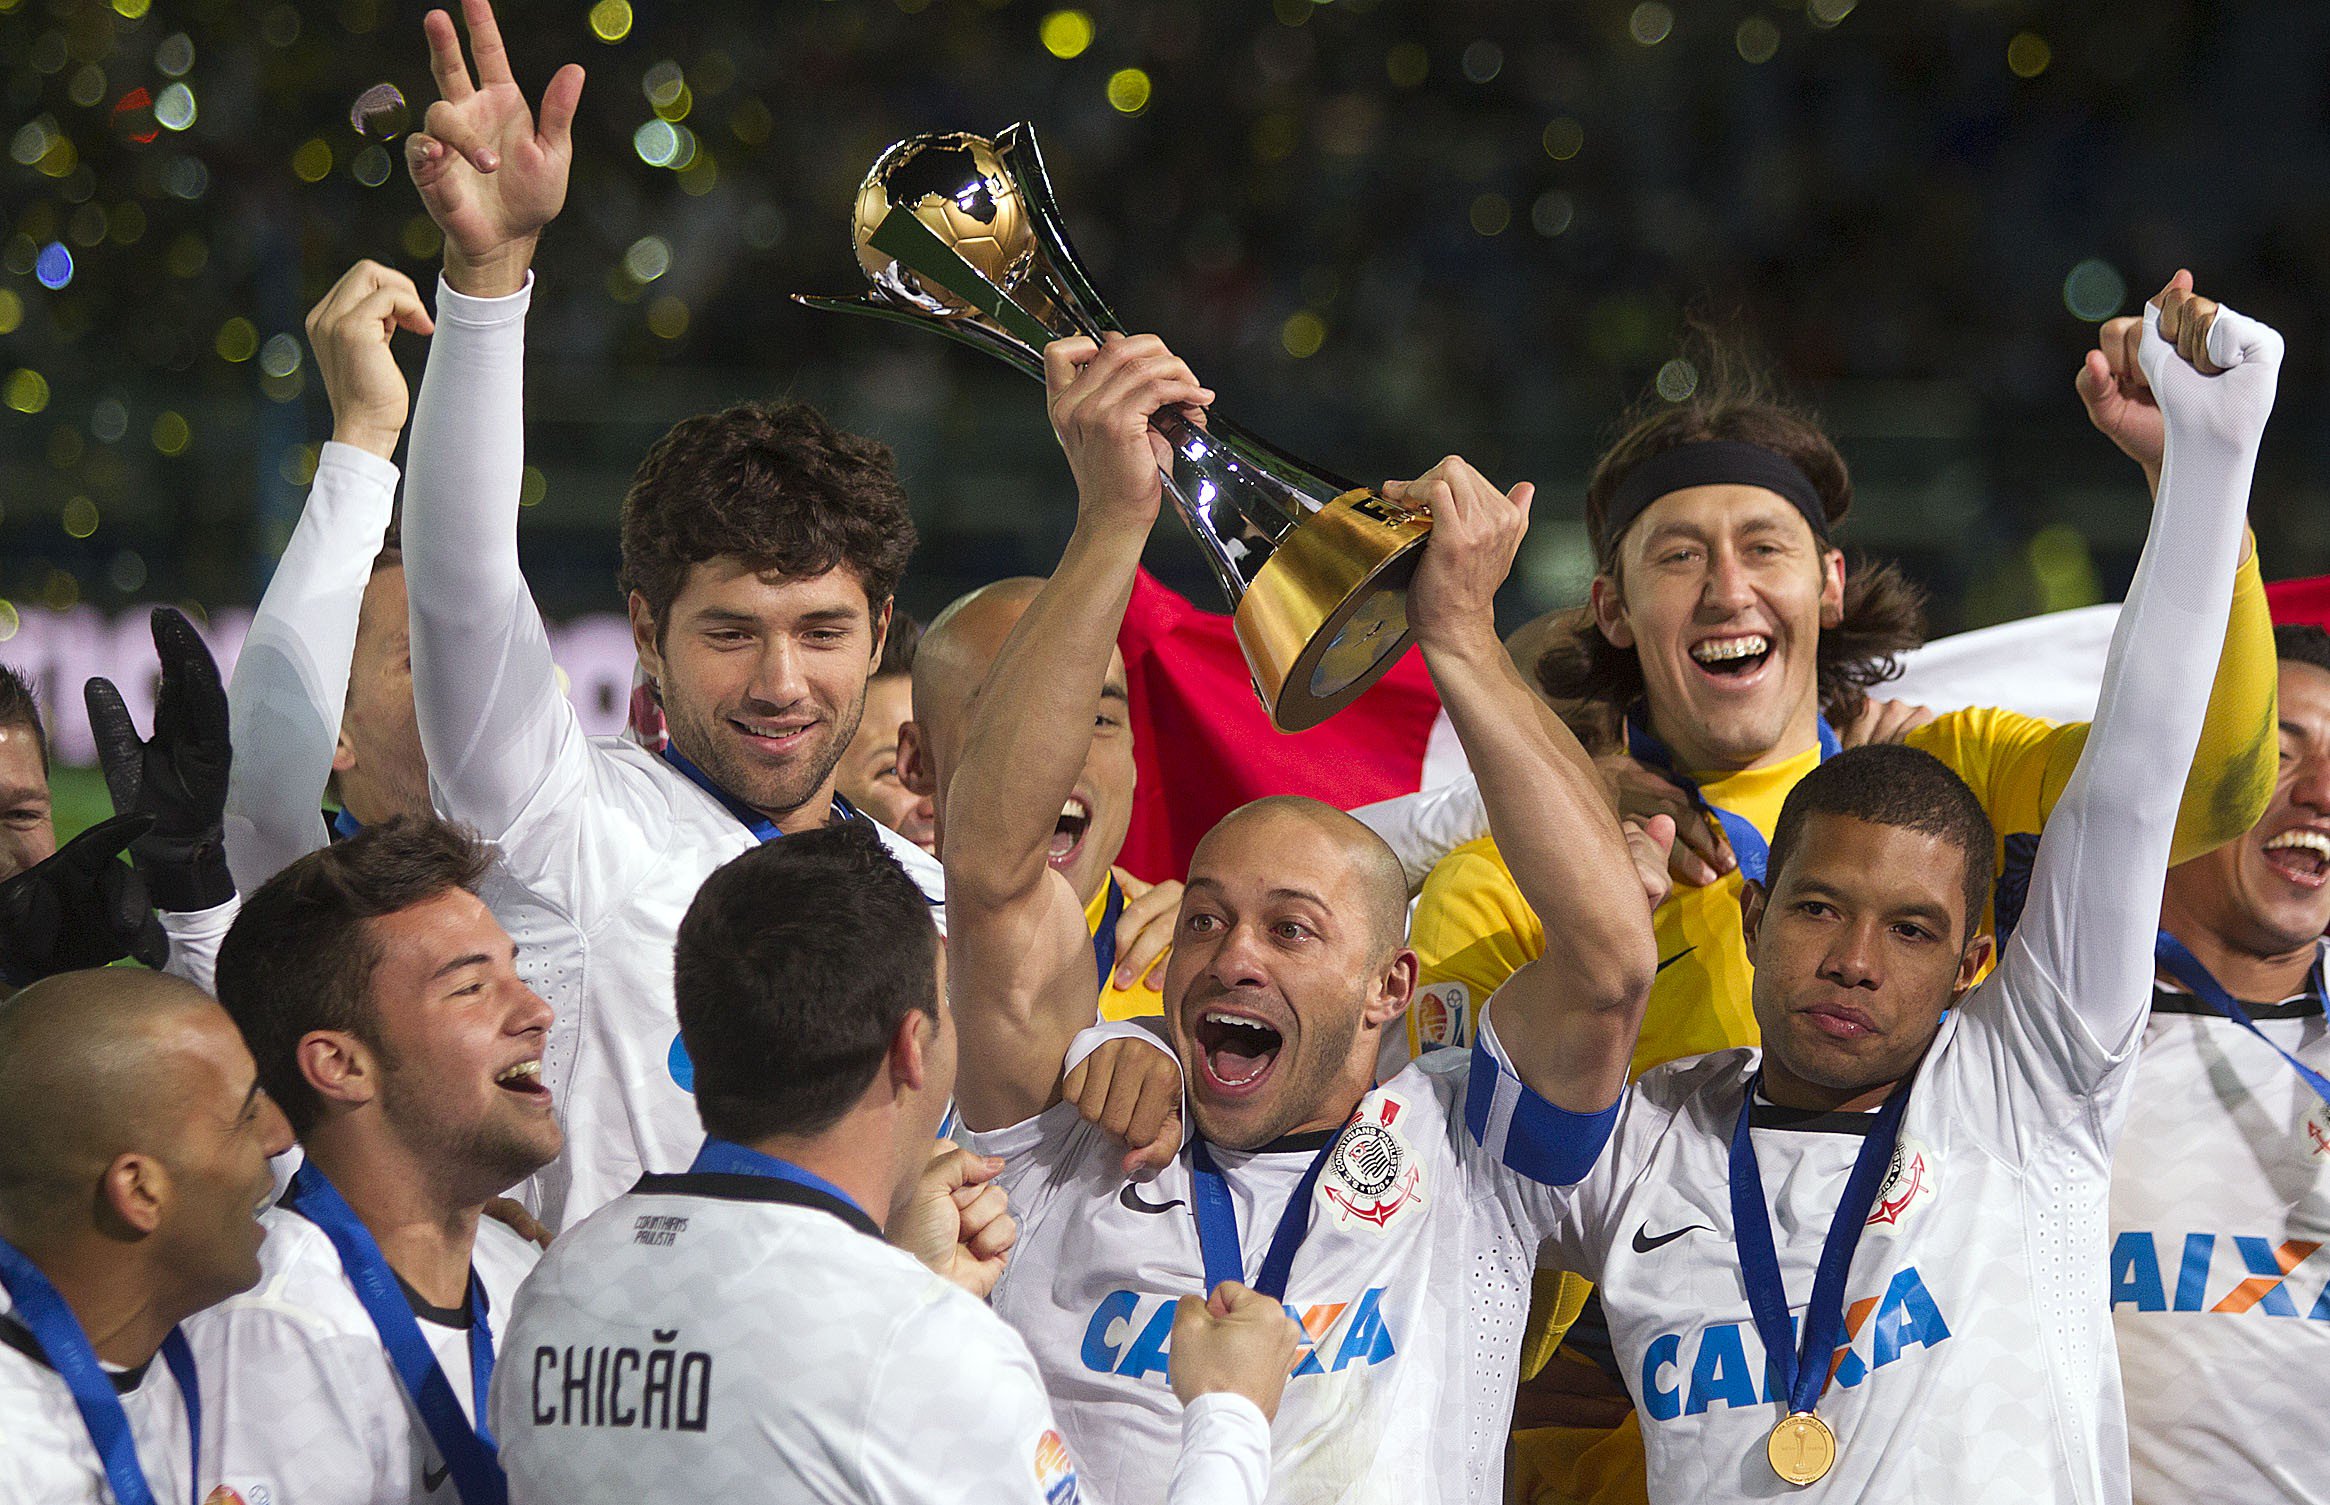 Você sabia? Corinthians é o único sul-americano campeão mundial